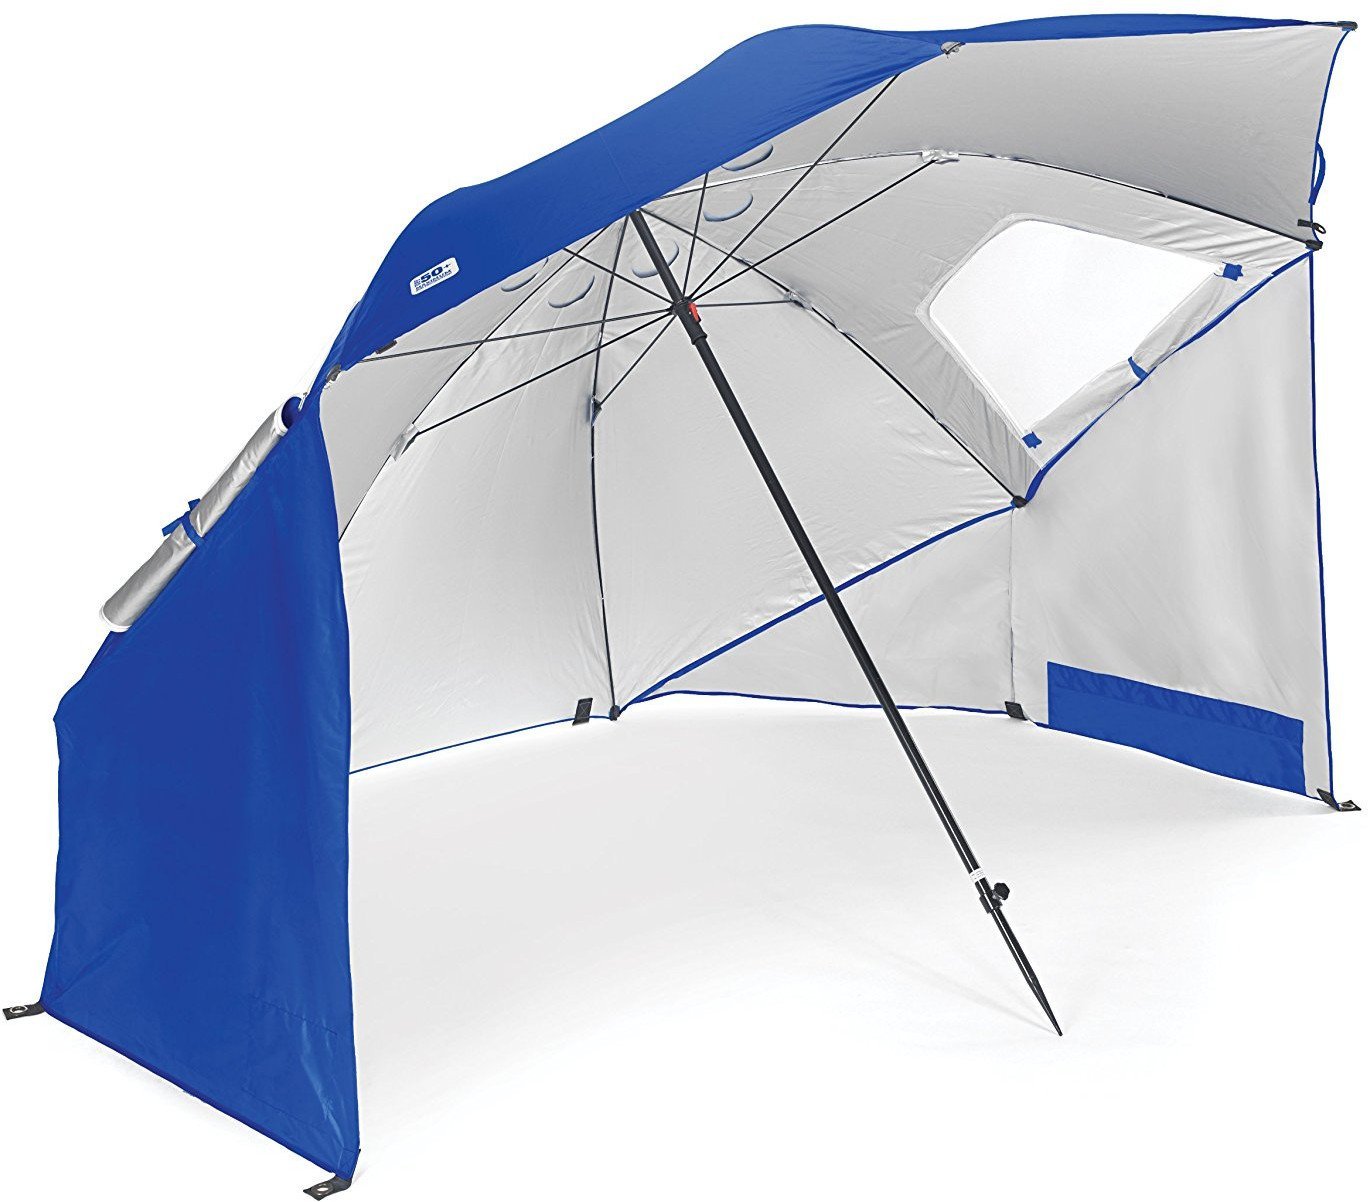 Sport-Brella Portable All-Weather Umbrella